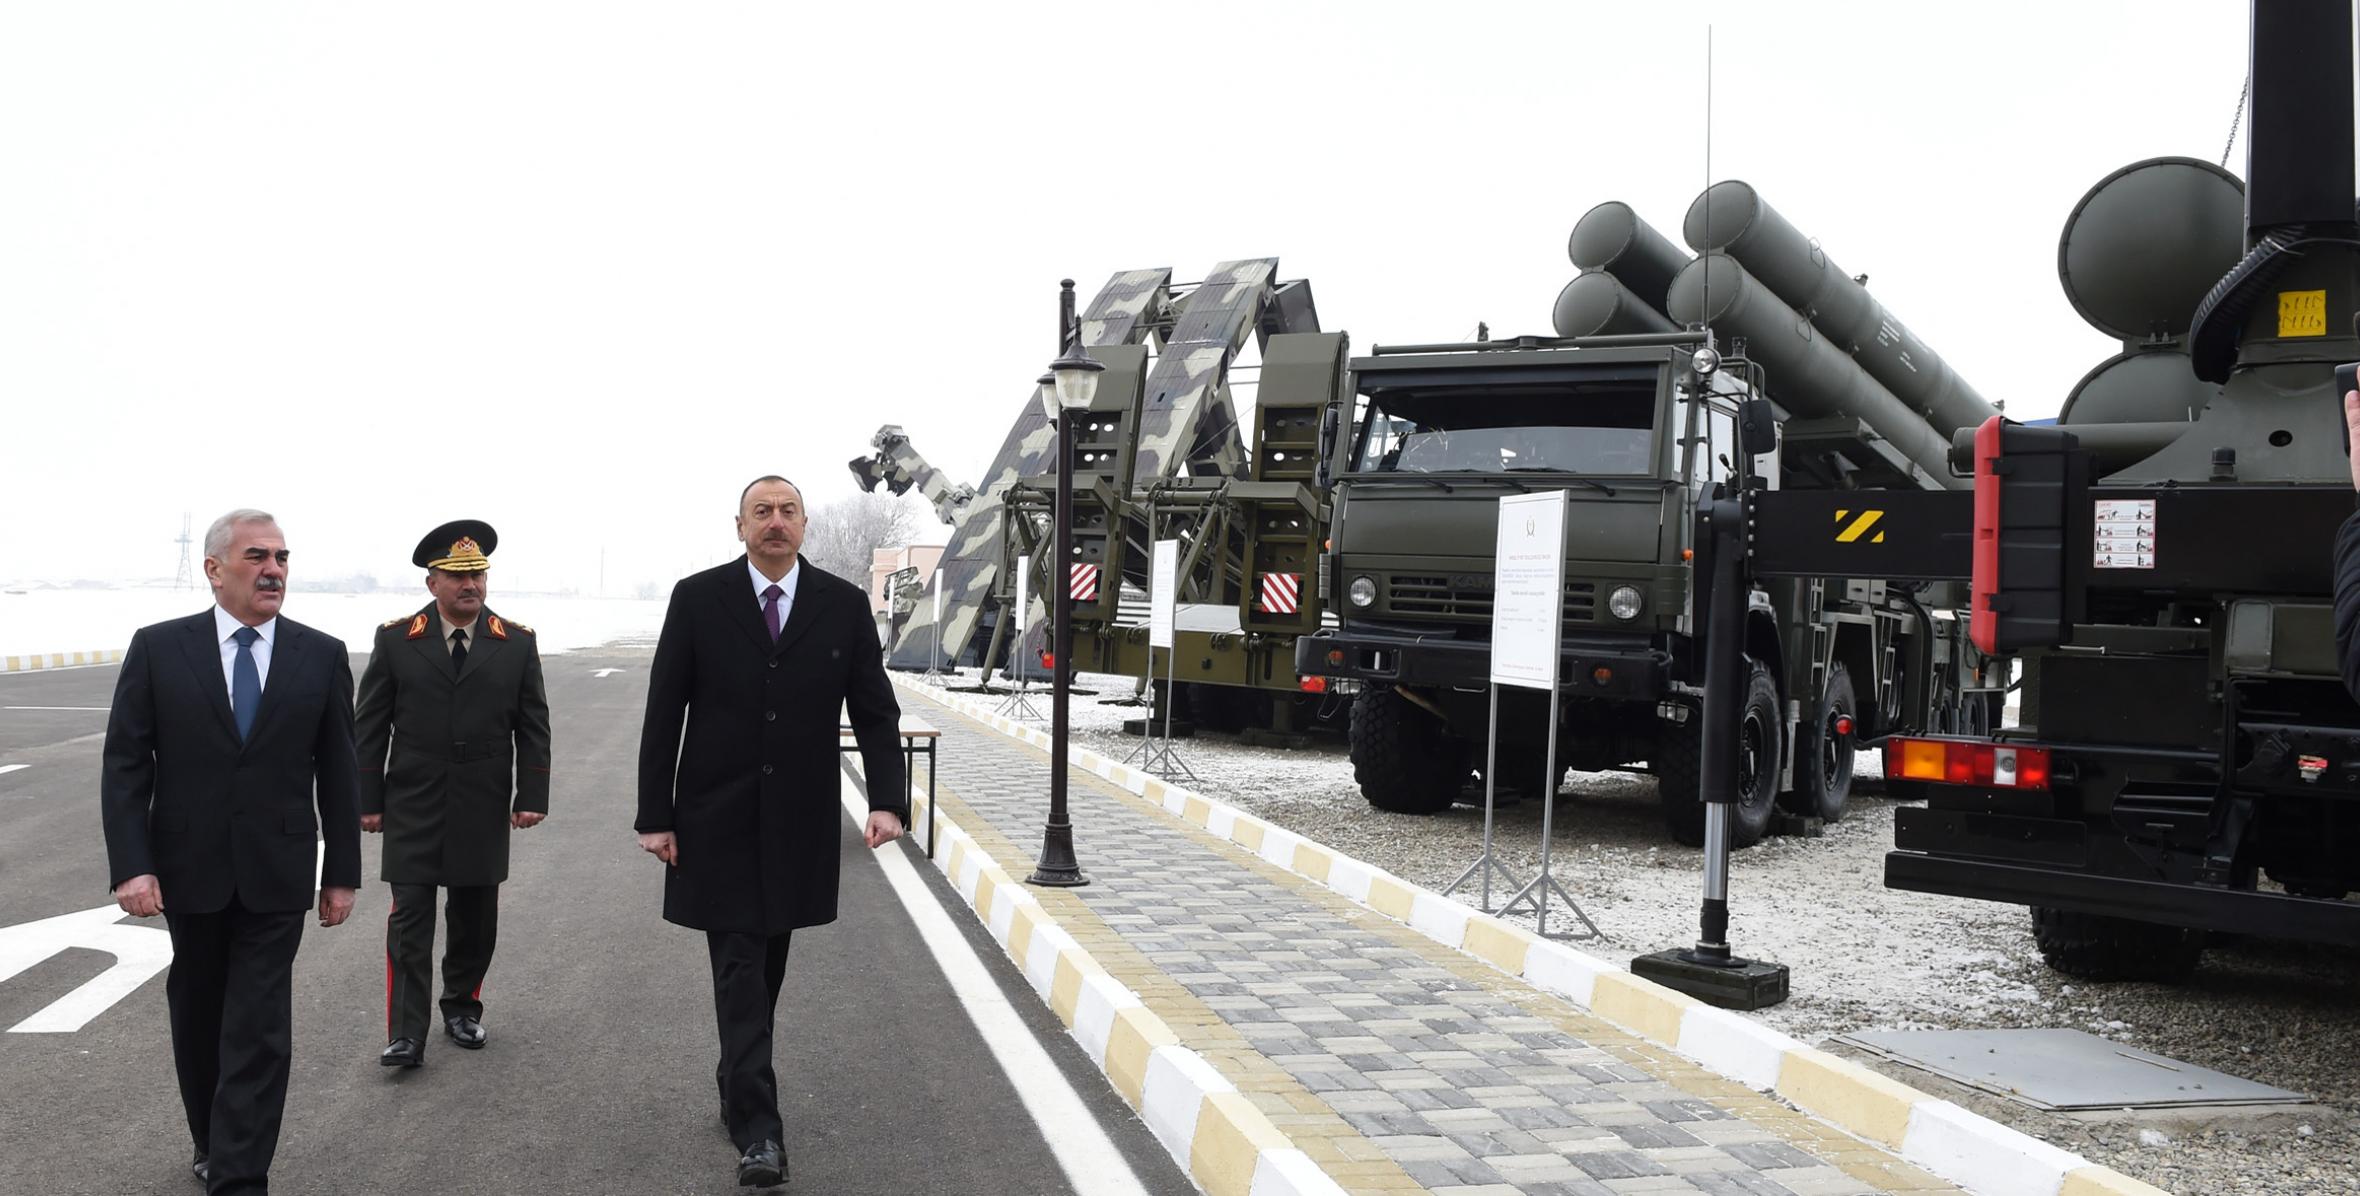 Ильхам Алиев принял участие в открытии солдатской казармы и армейского бытового комплекса в Н-ской воинской части Отдельной общевойсковой армии